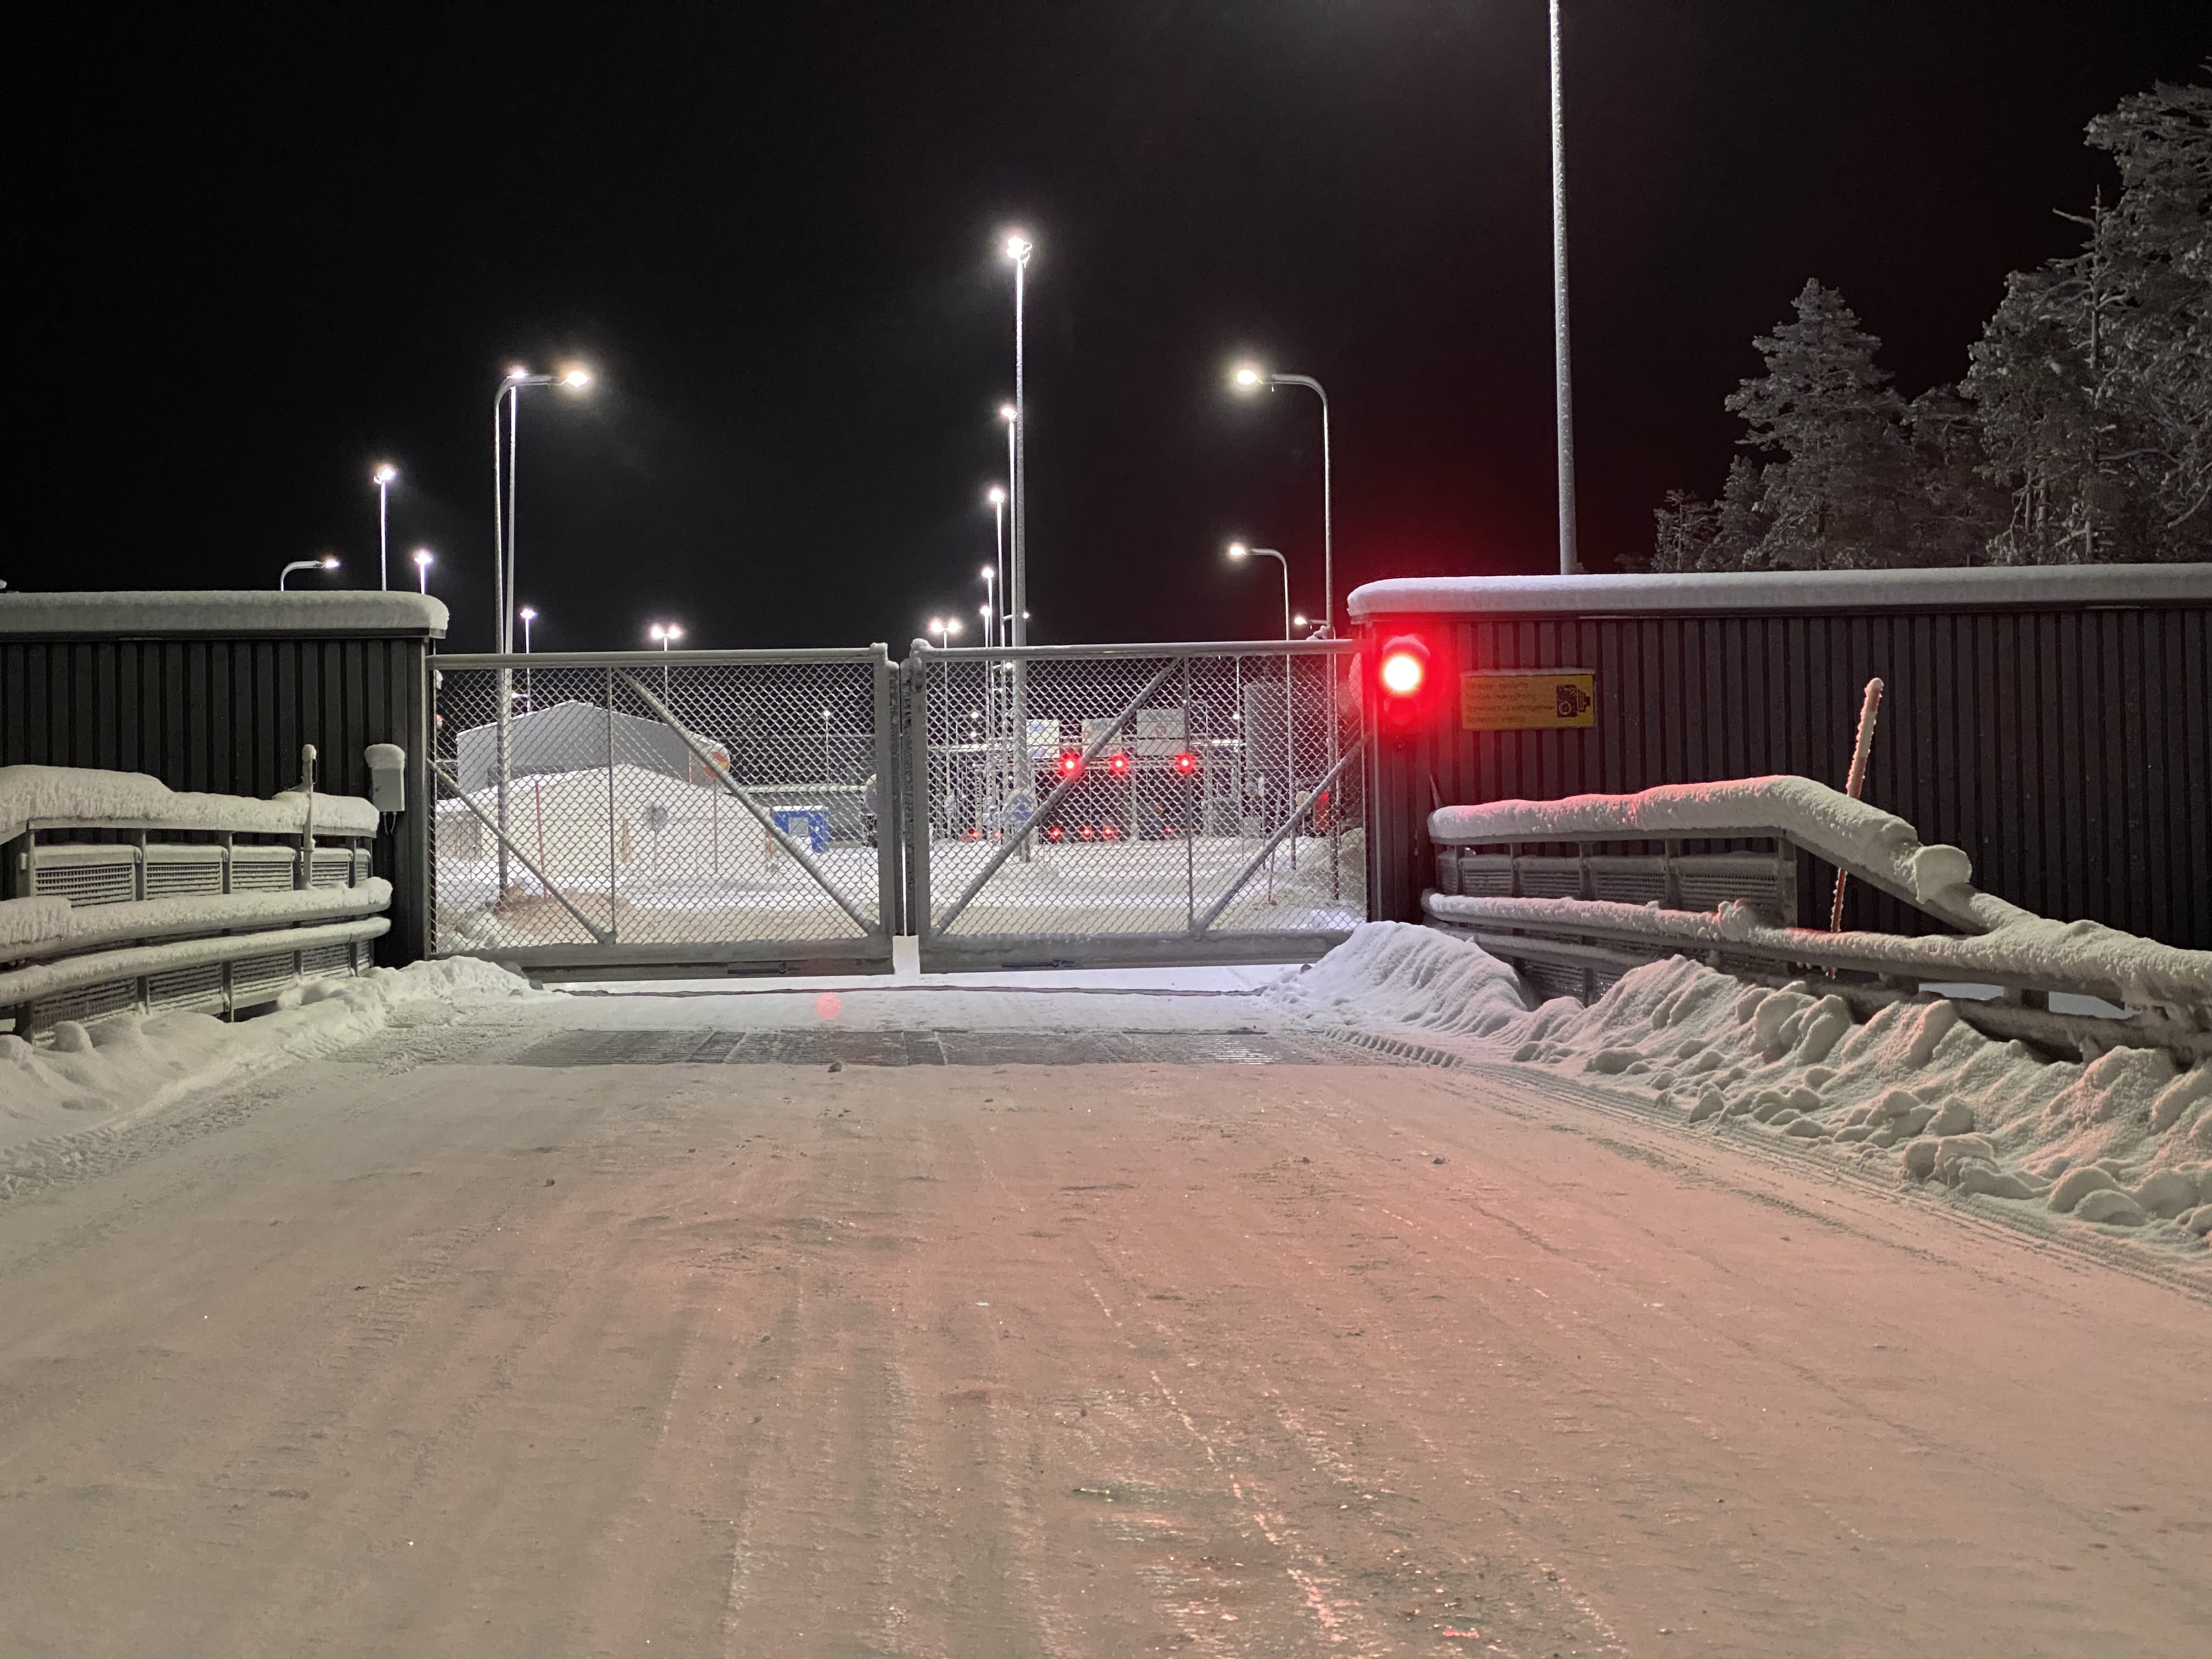 سيتم إغلاق آخر معبر حدودي شرقي لفنلندا بعد ظهر الأربعاء